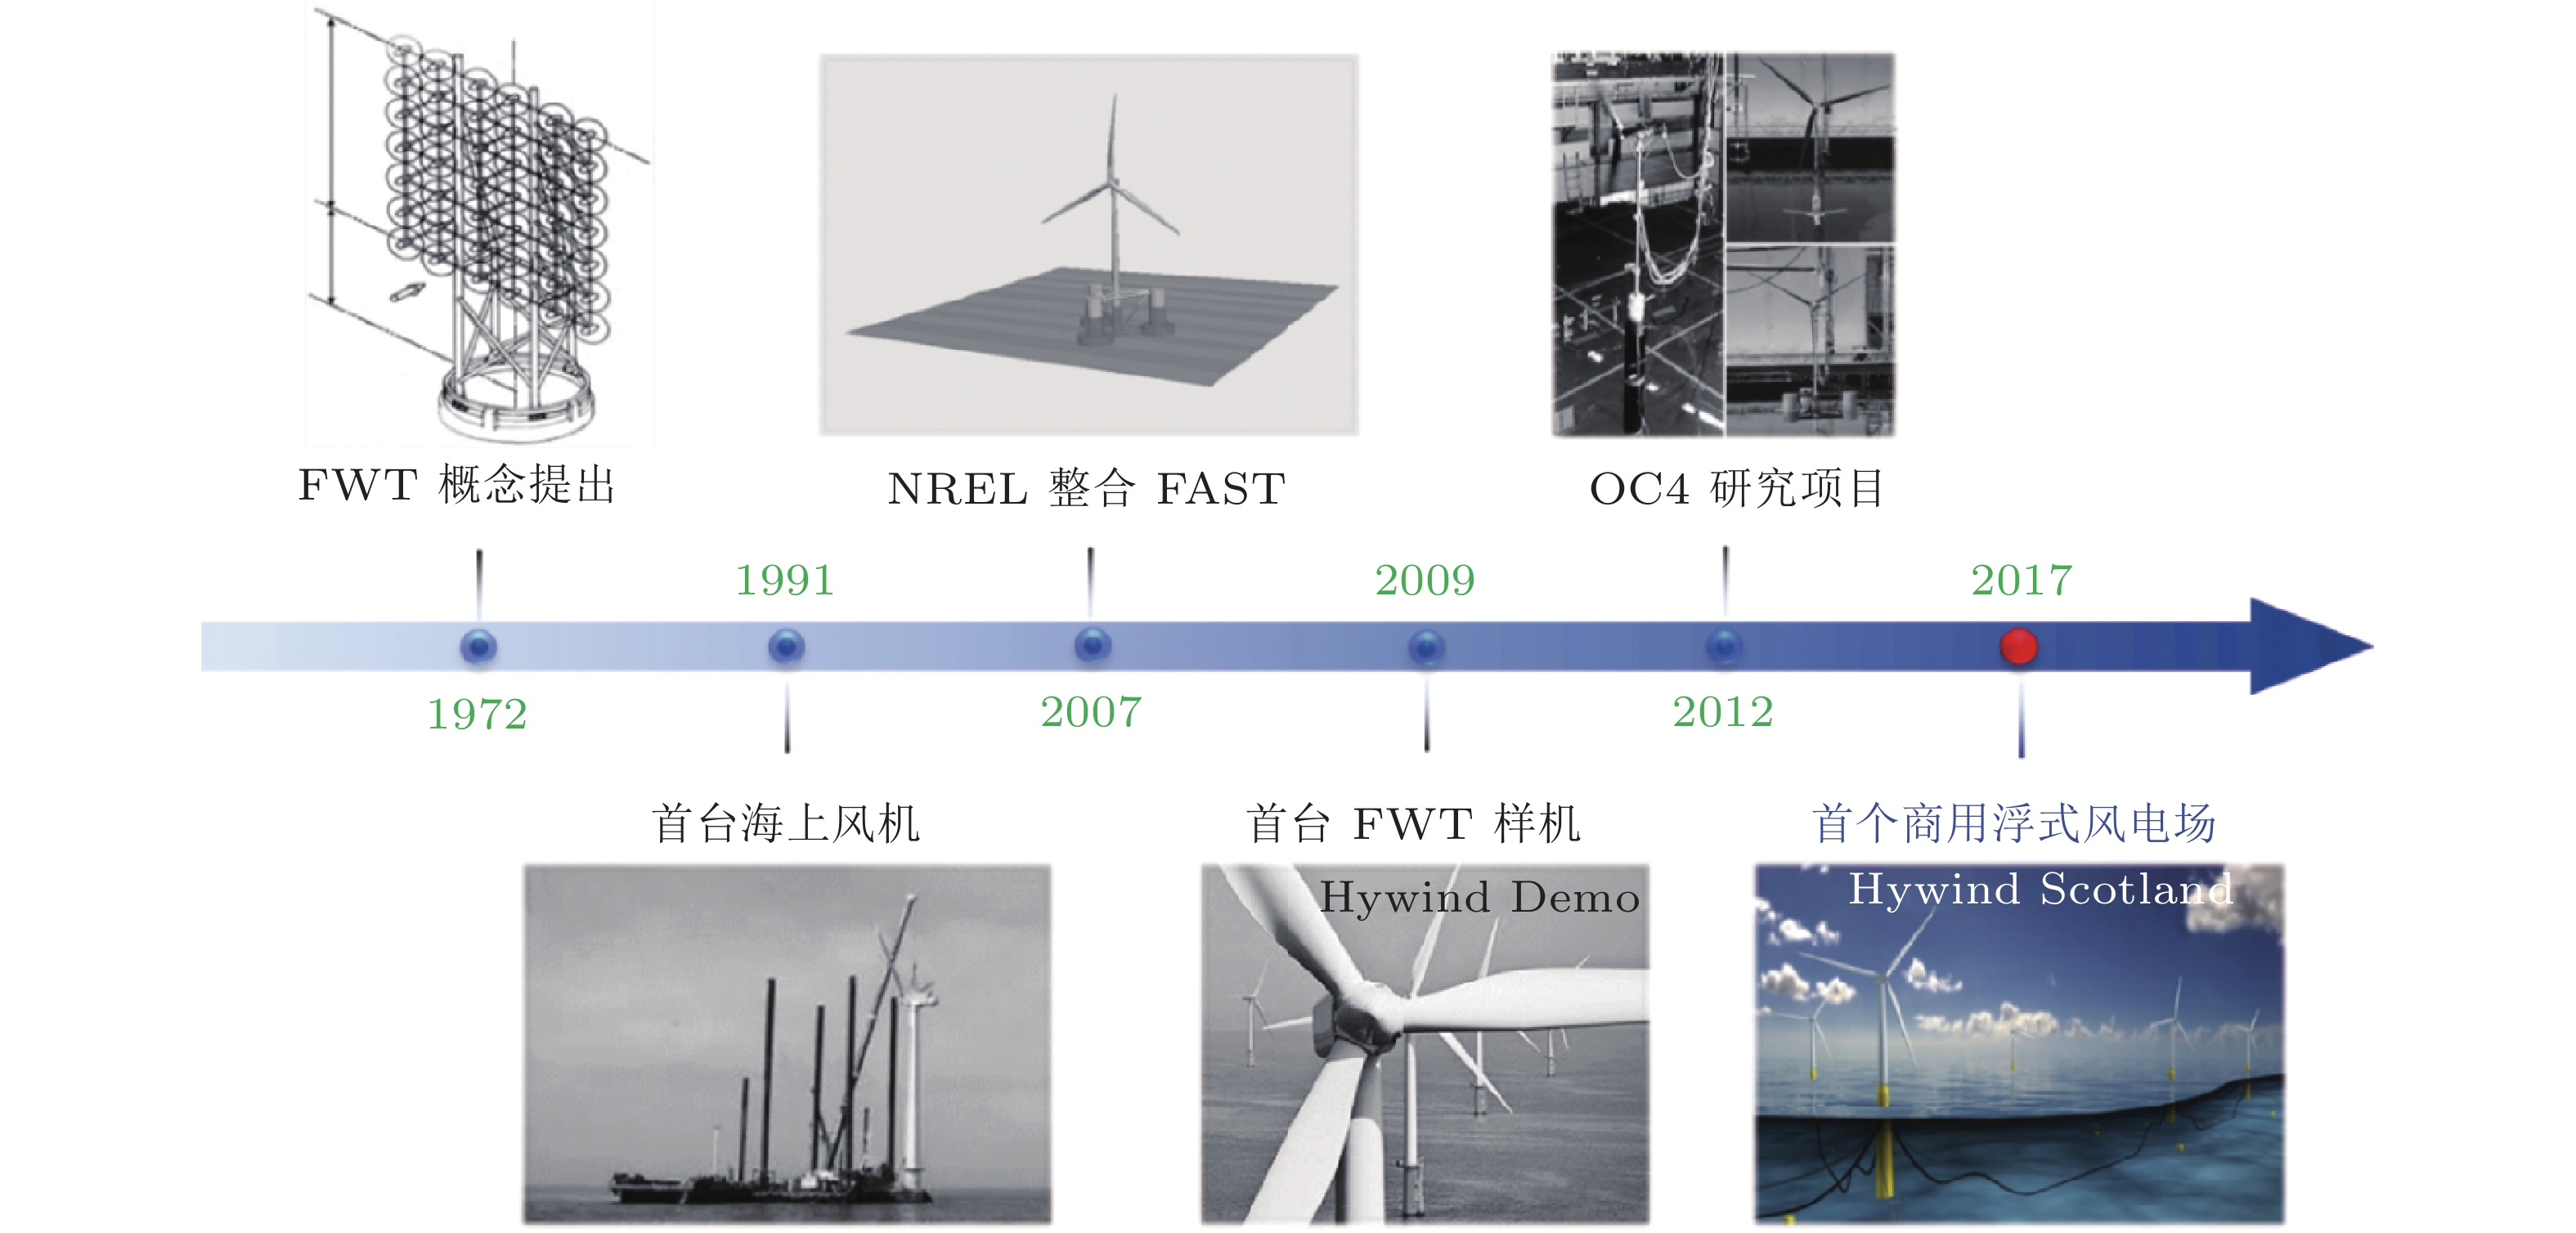 大型漂浮式风电装备耦合动力学研究: 历史、进展与挑战